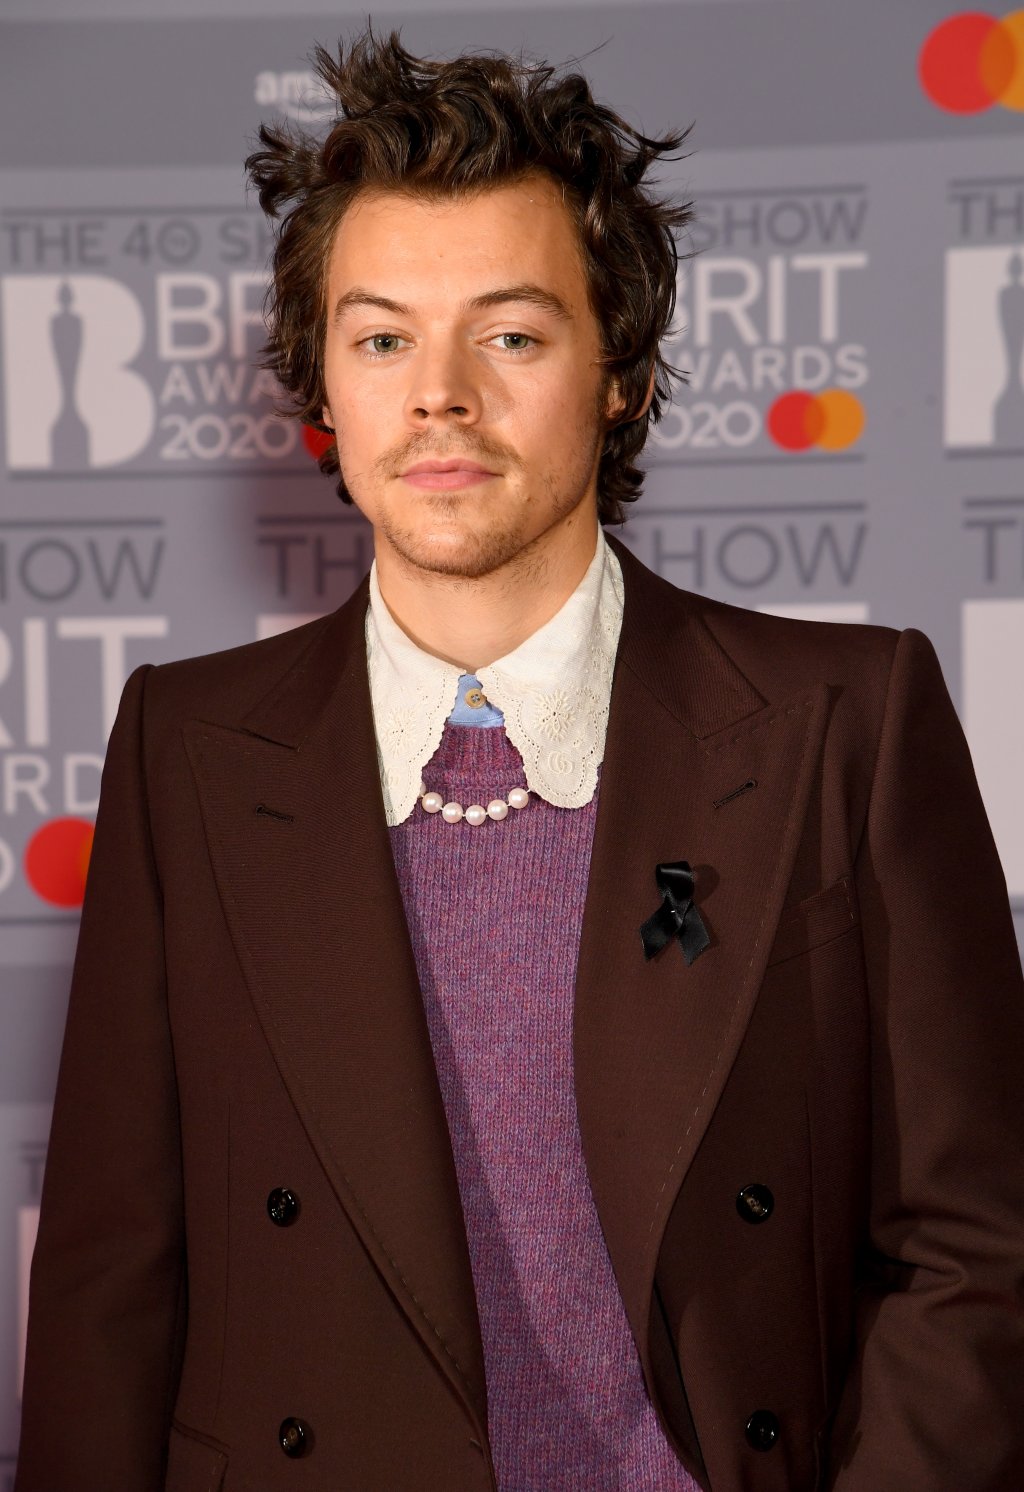 Harry Styles usando terninho da Gucci no BRIT Awards com expressão facial séria, suéter roxo e gola da camisa branca aparente